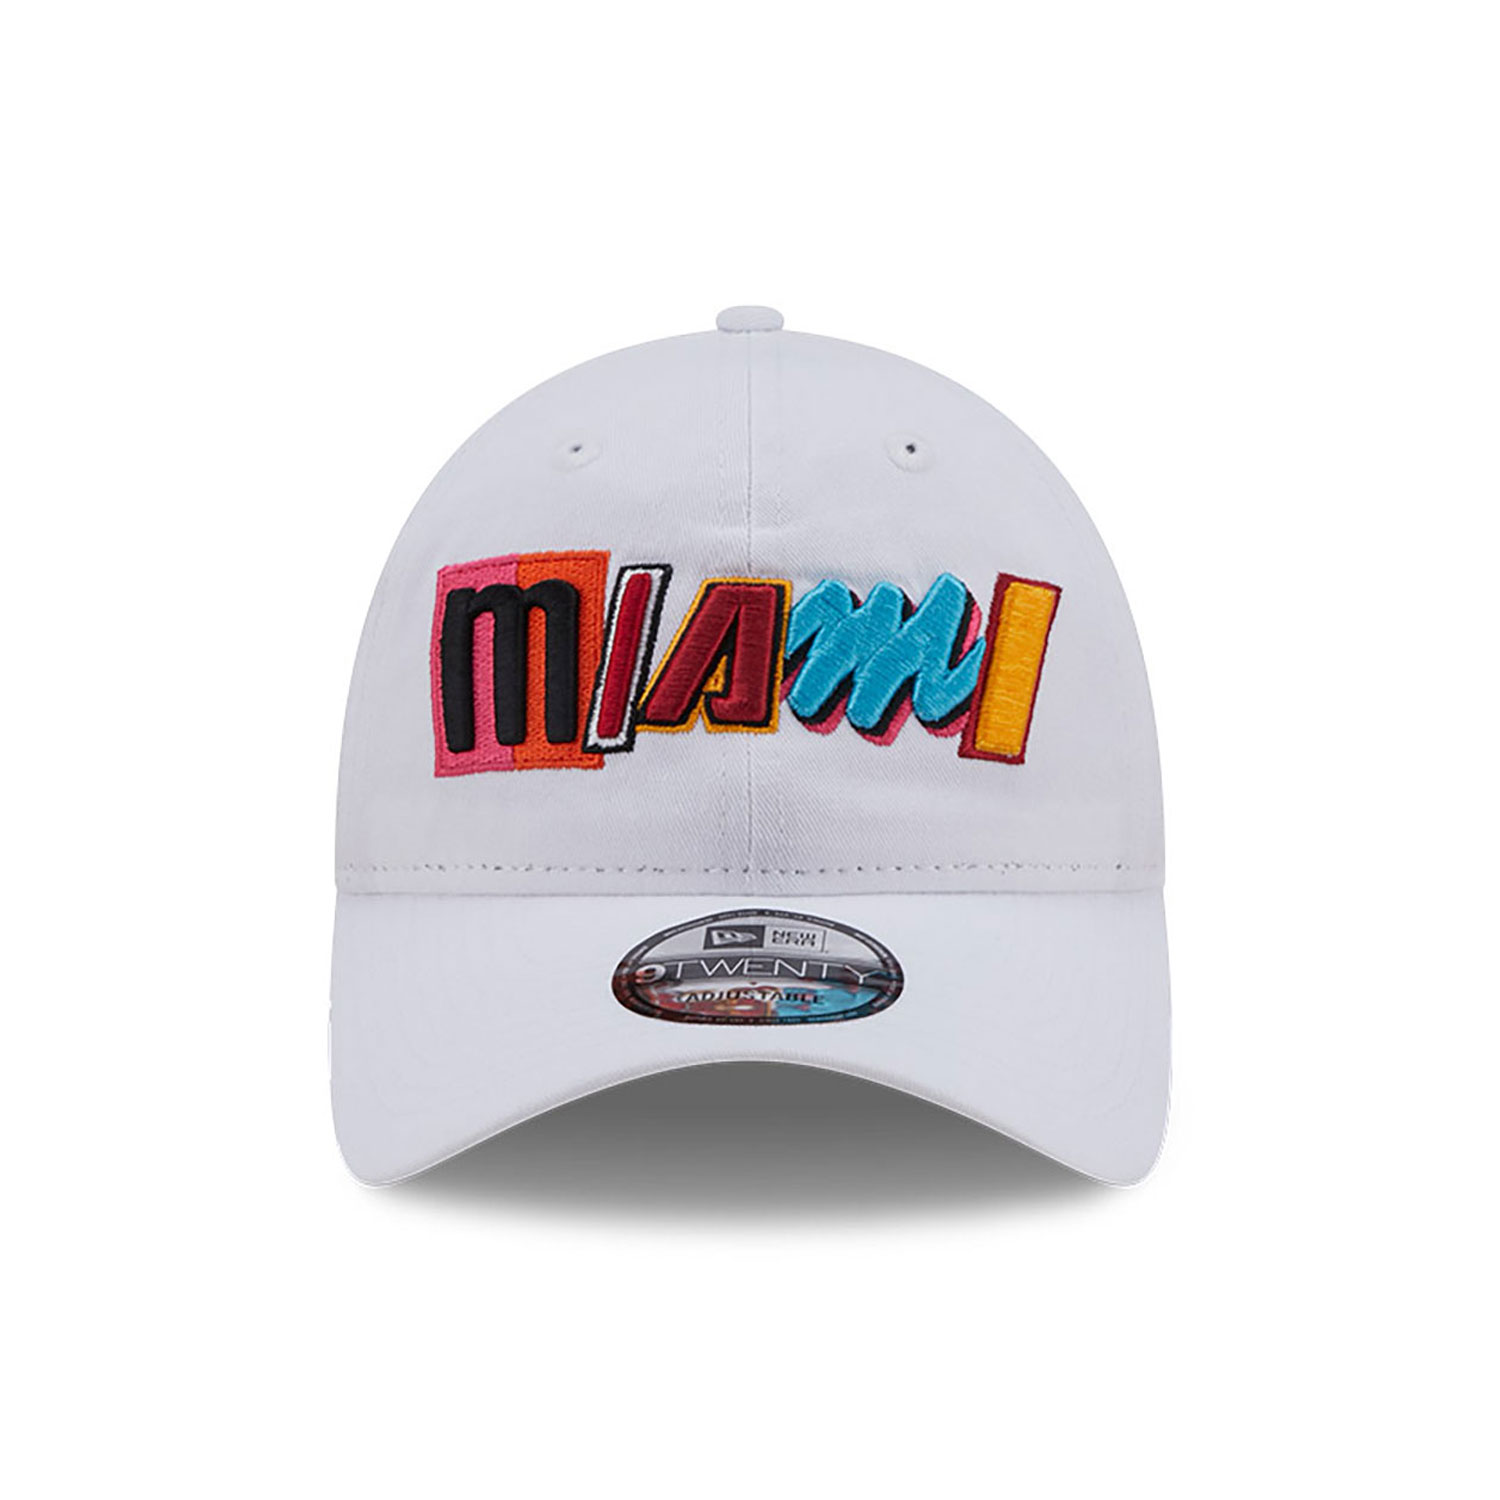 Miami Heat Authentics City Edition White 9TWENTY Adjustable Cap